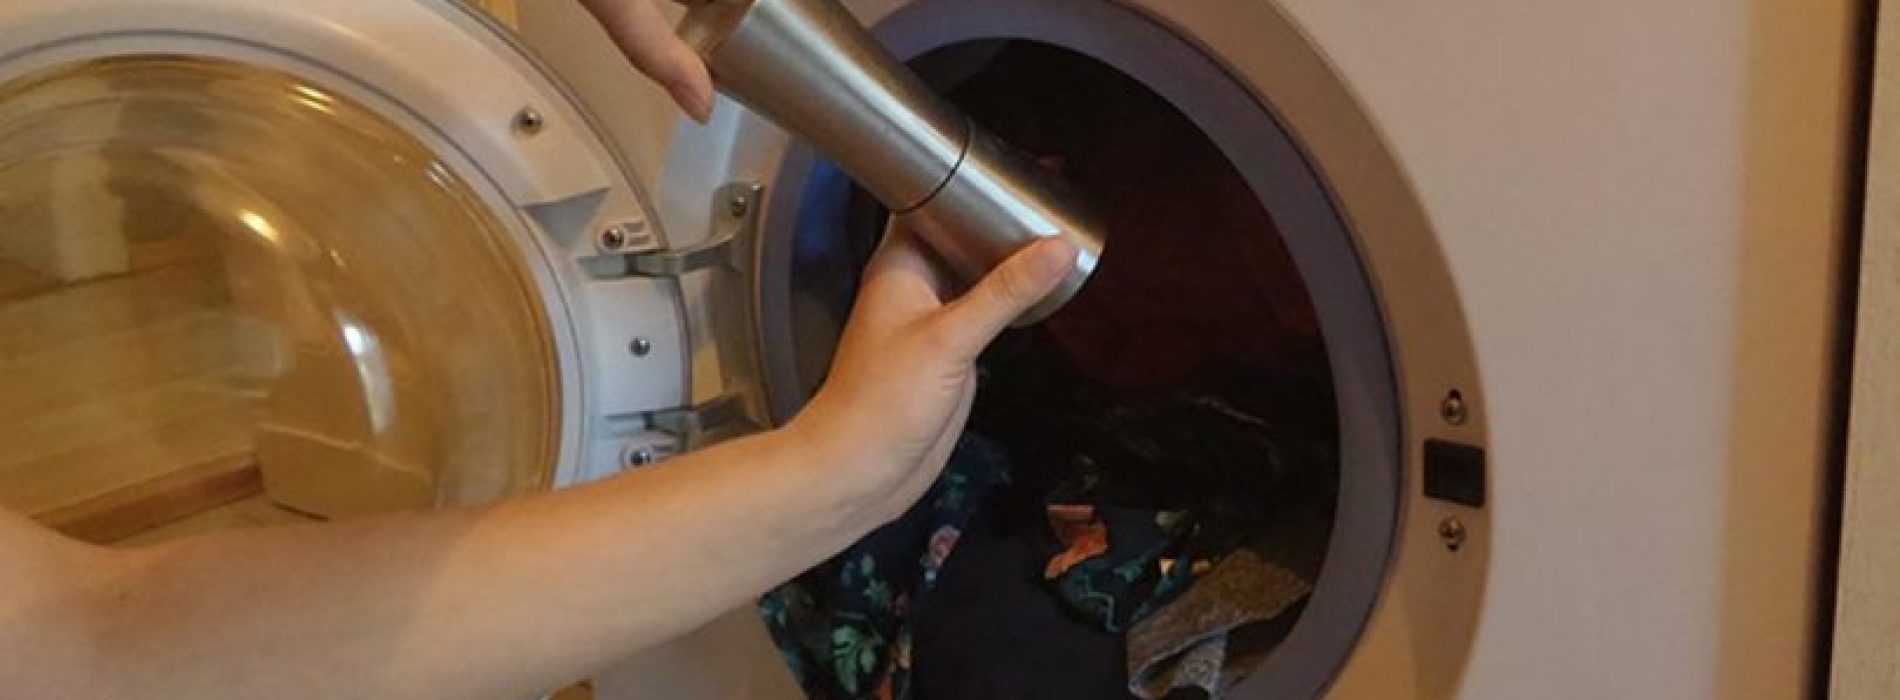 Strooi peper in je wasmachine en je gelooft je ogen niet! Een truc uit het kruidenrek!